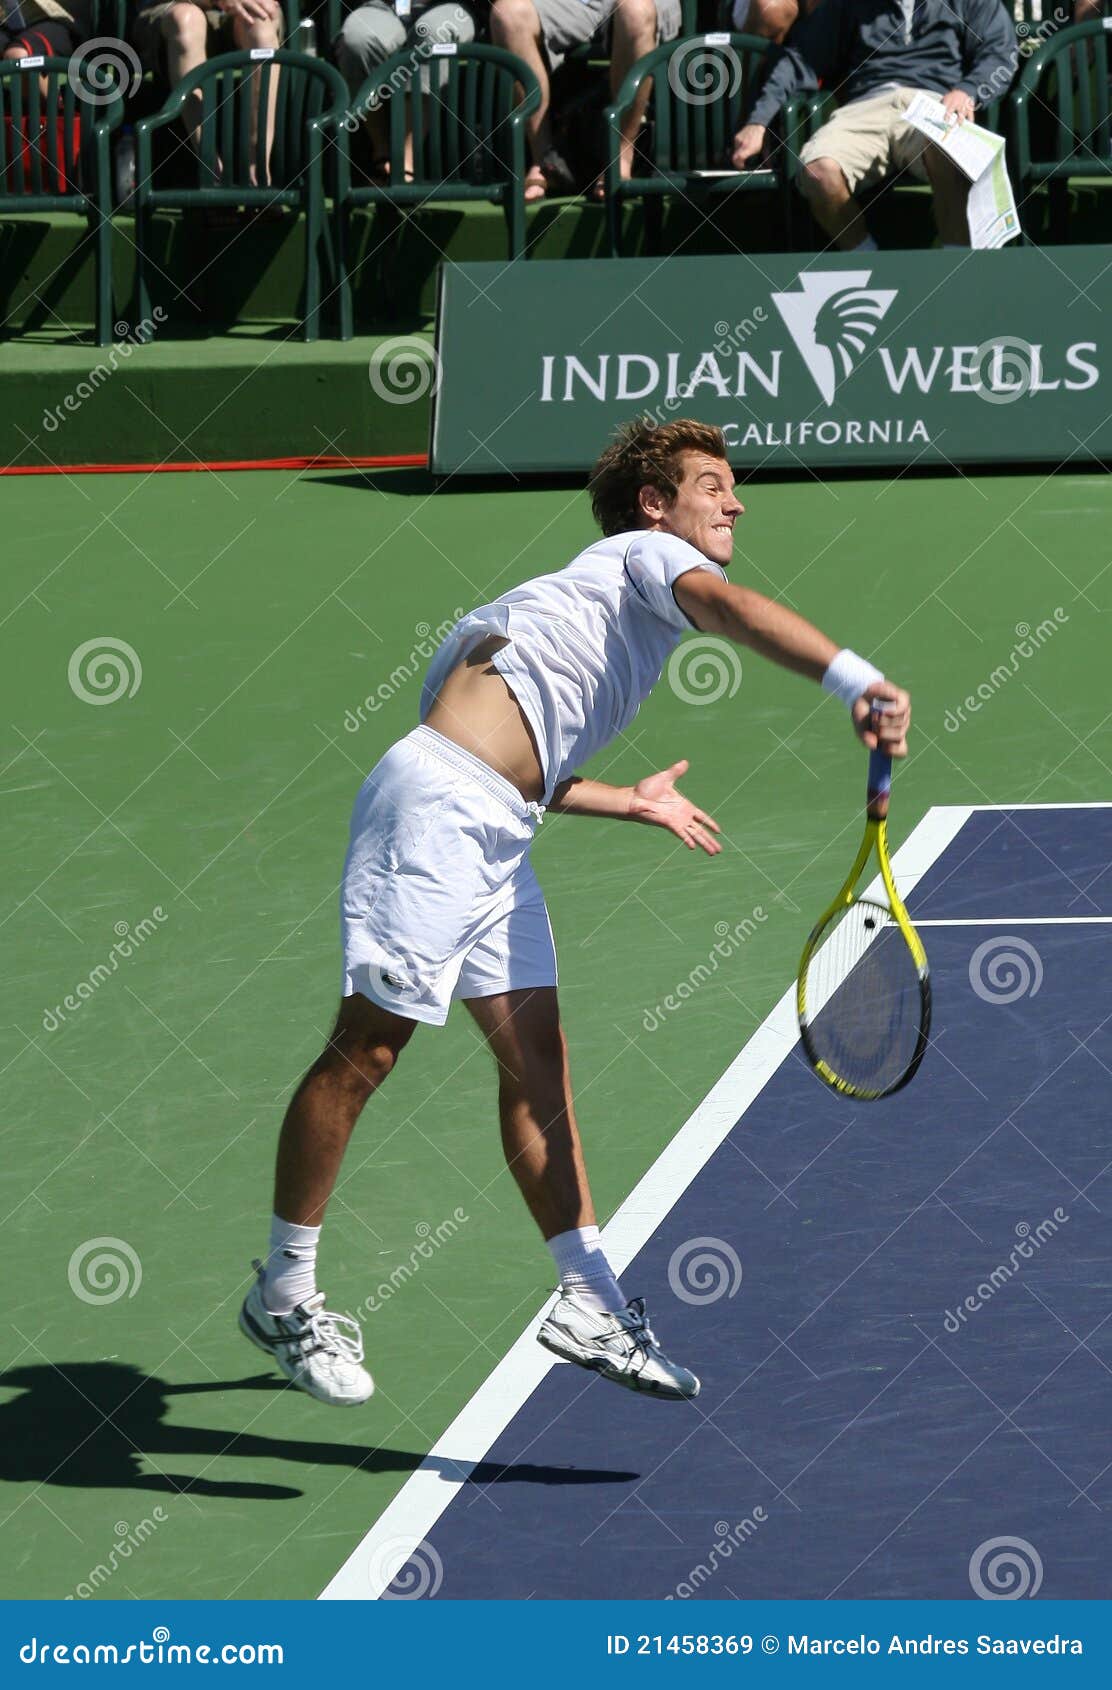 De Professionele Speler Van Het Tennis. Redactionele Stock Afbeelding ...